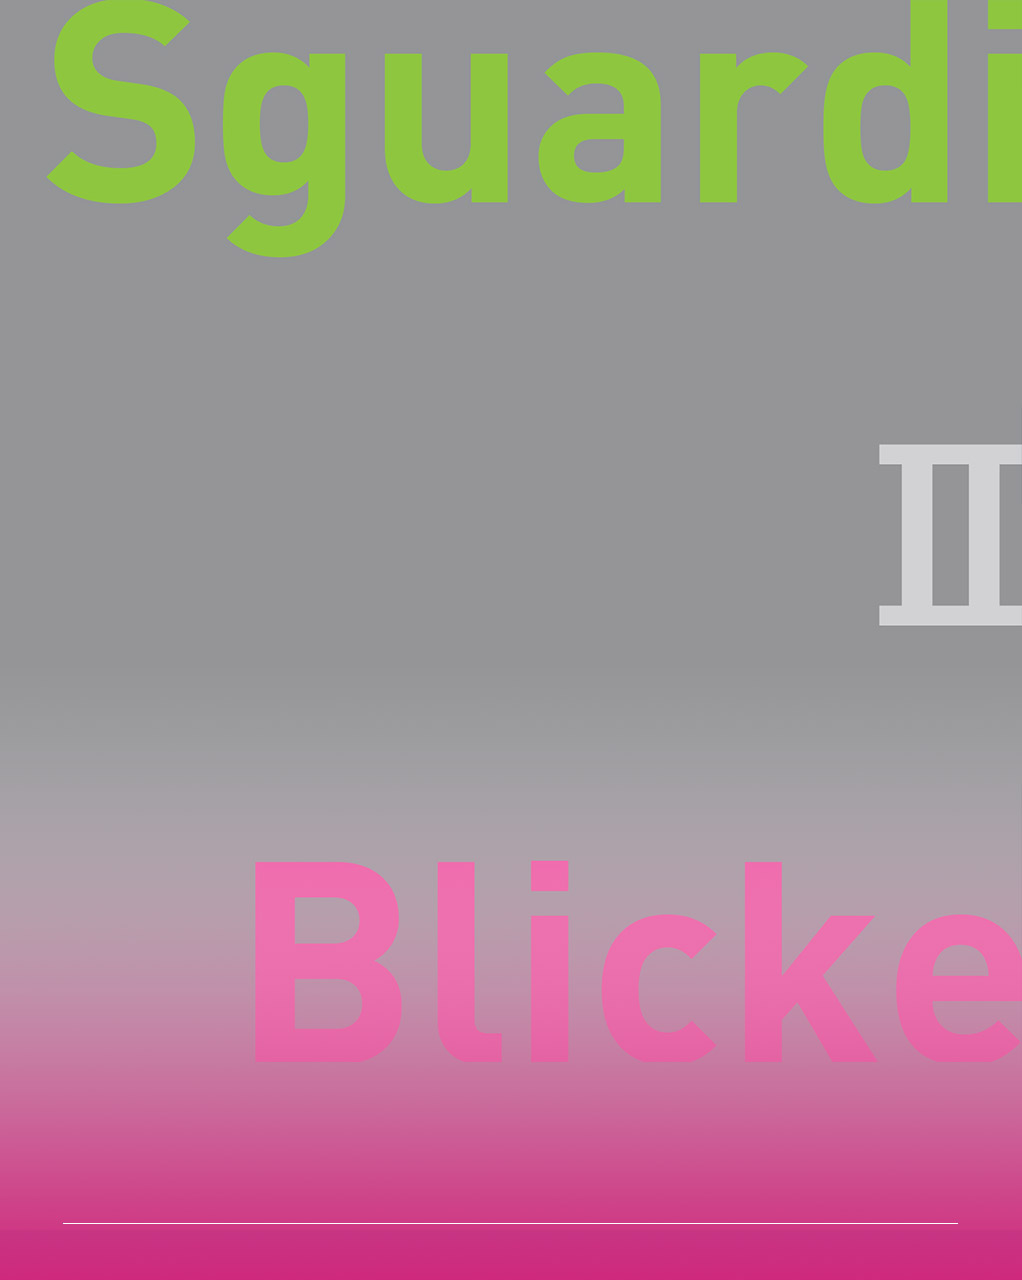 immagine con sfondo grigio e titolo Sguardi II Blicke